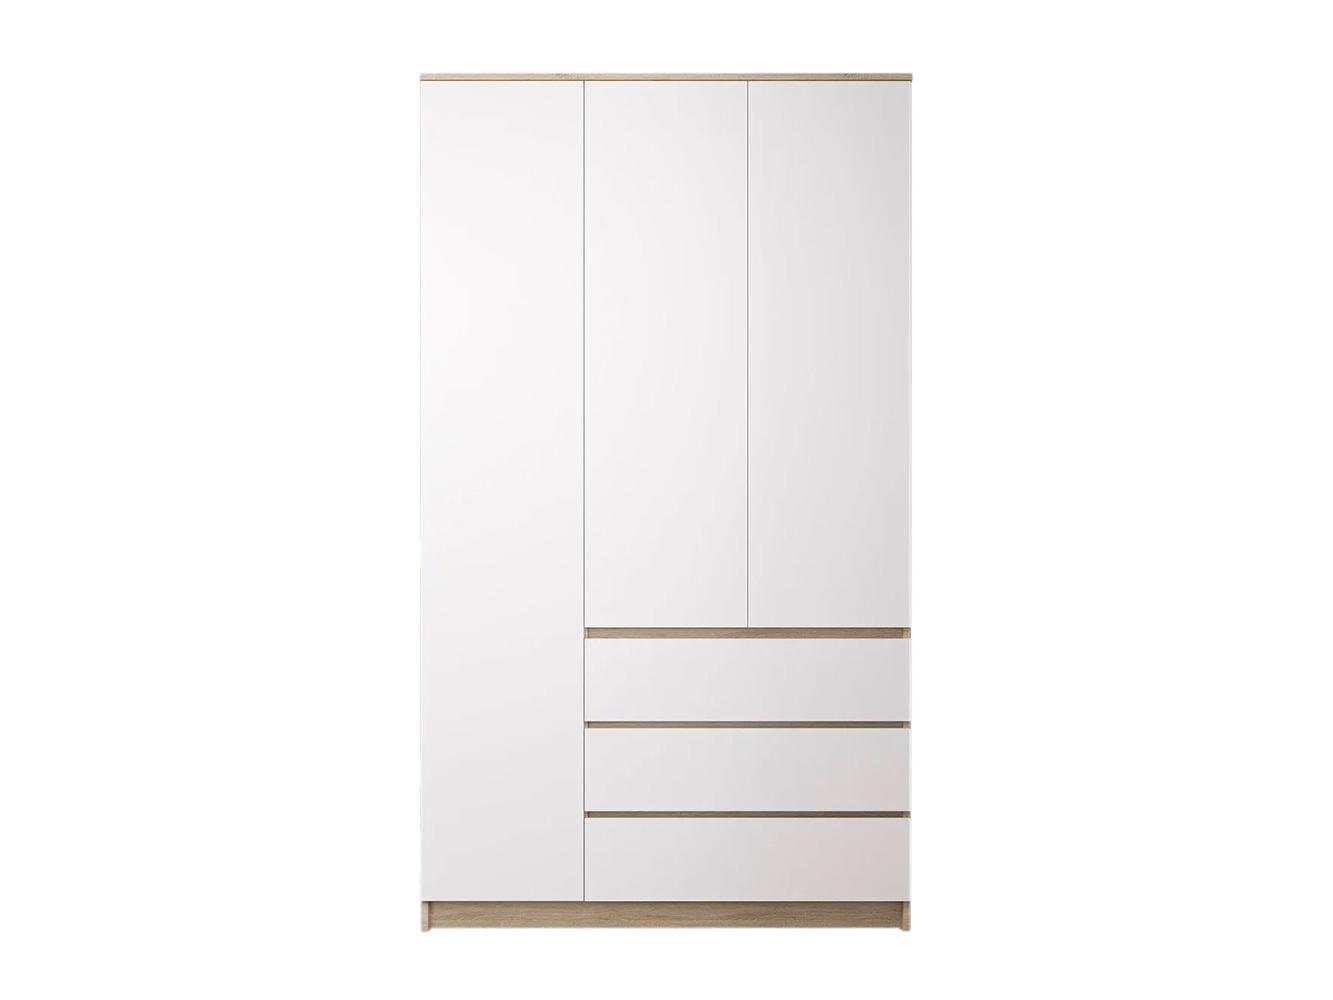 Распашной шкаф Мальм 314 oak white ИКЕА (IKEA) изображение товара